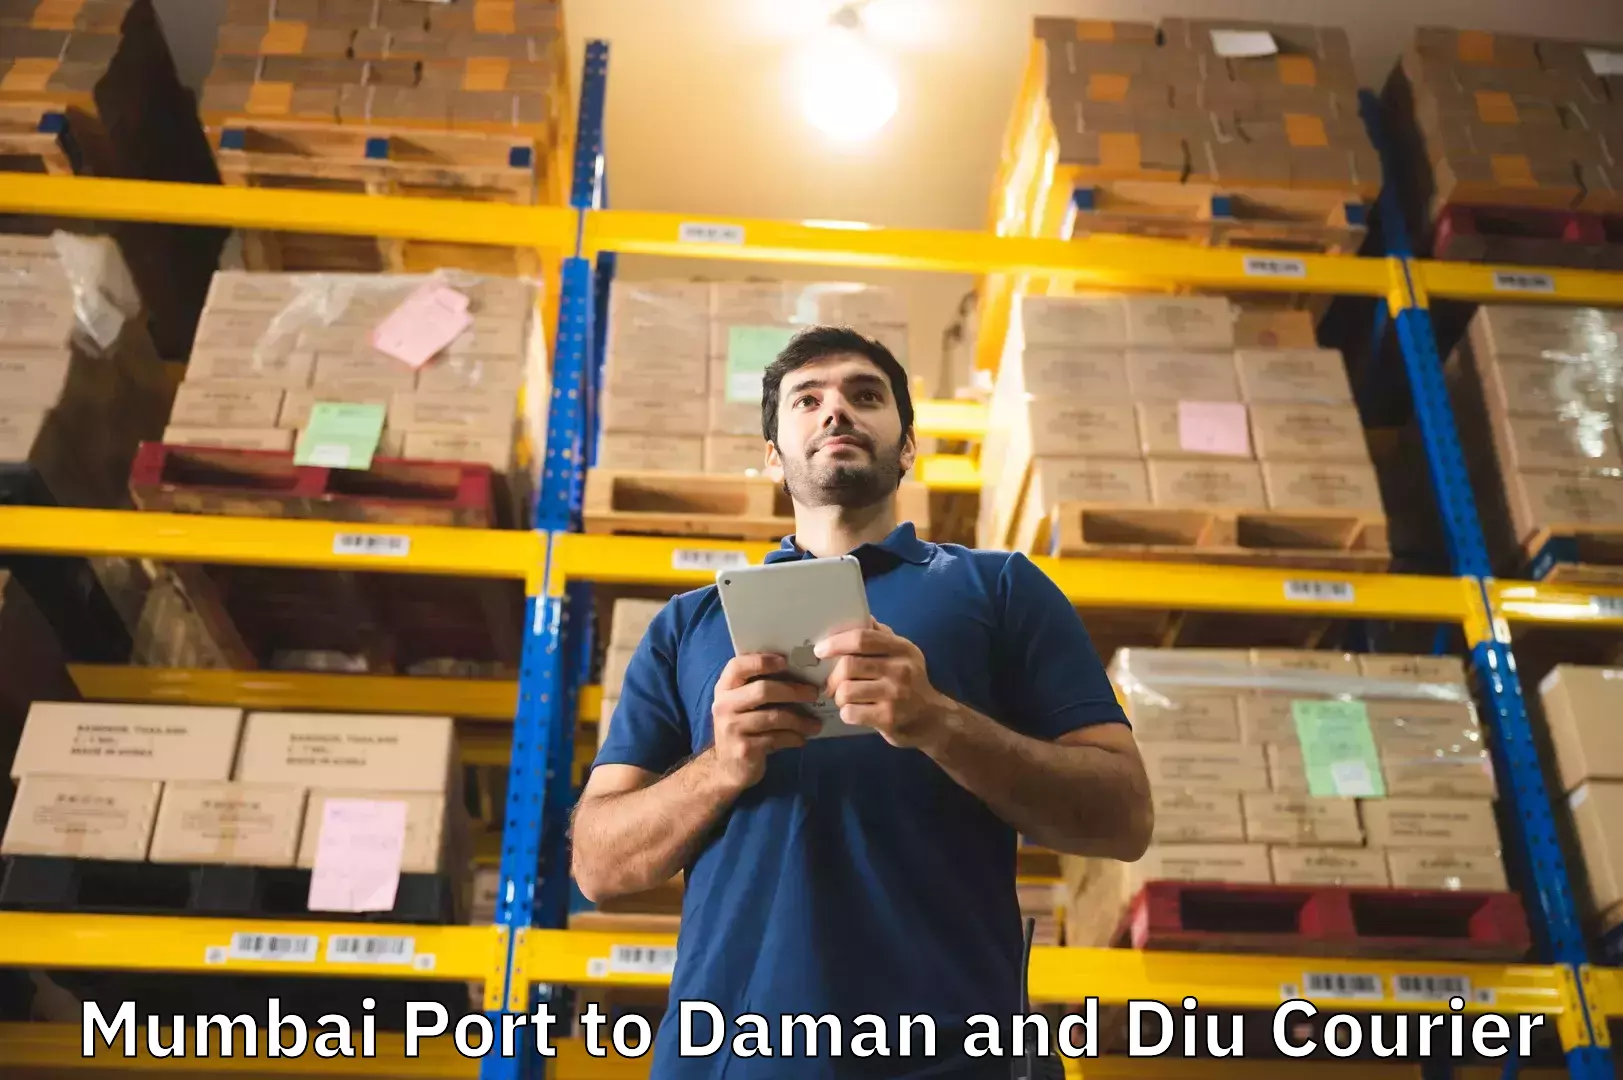 Holiday baggage shipping in Mumbai Port to Daman and Diu